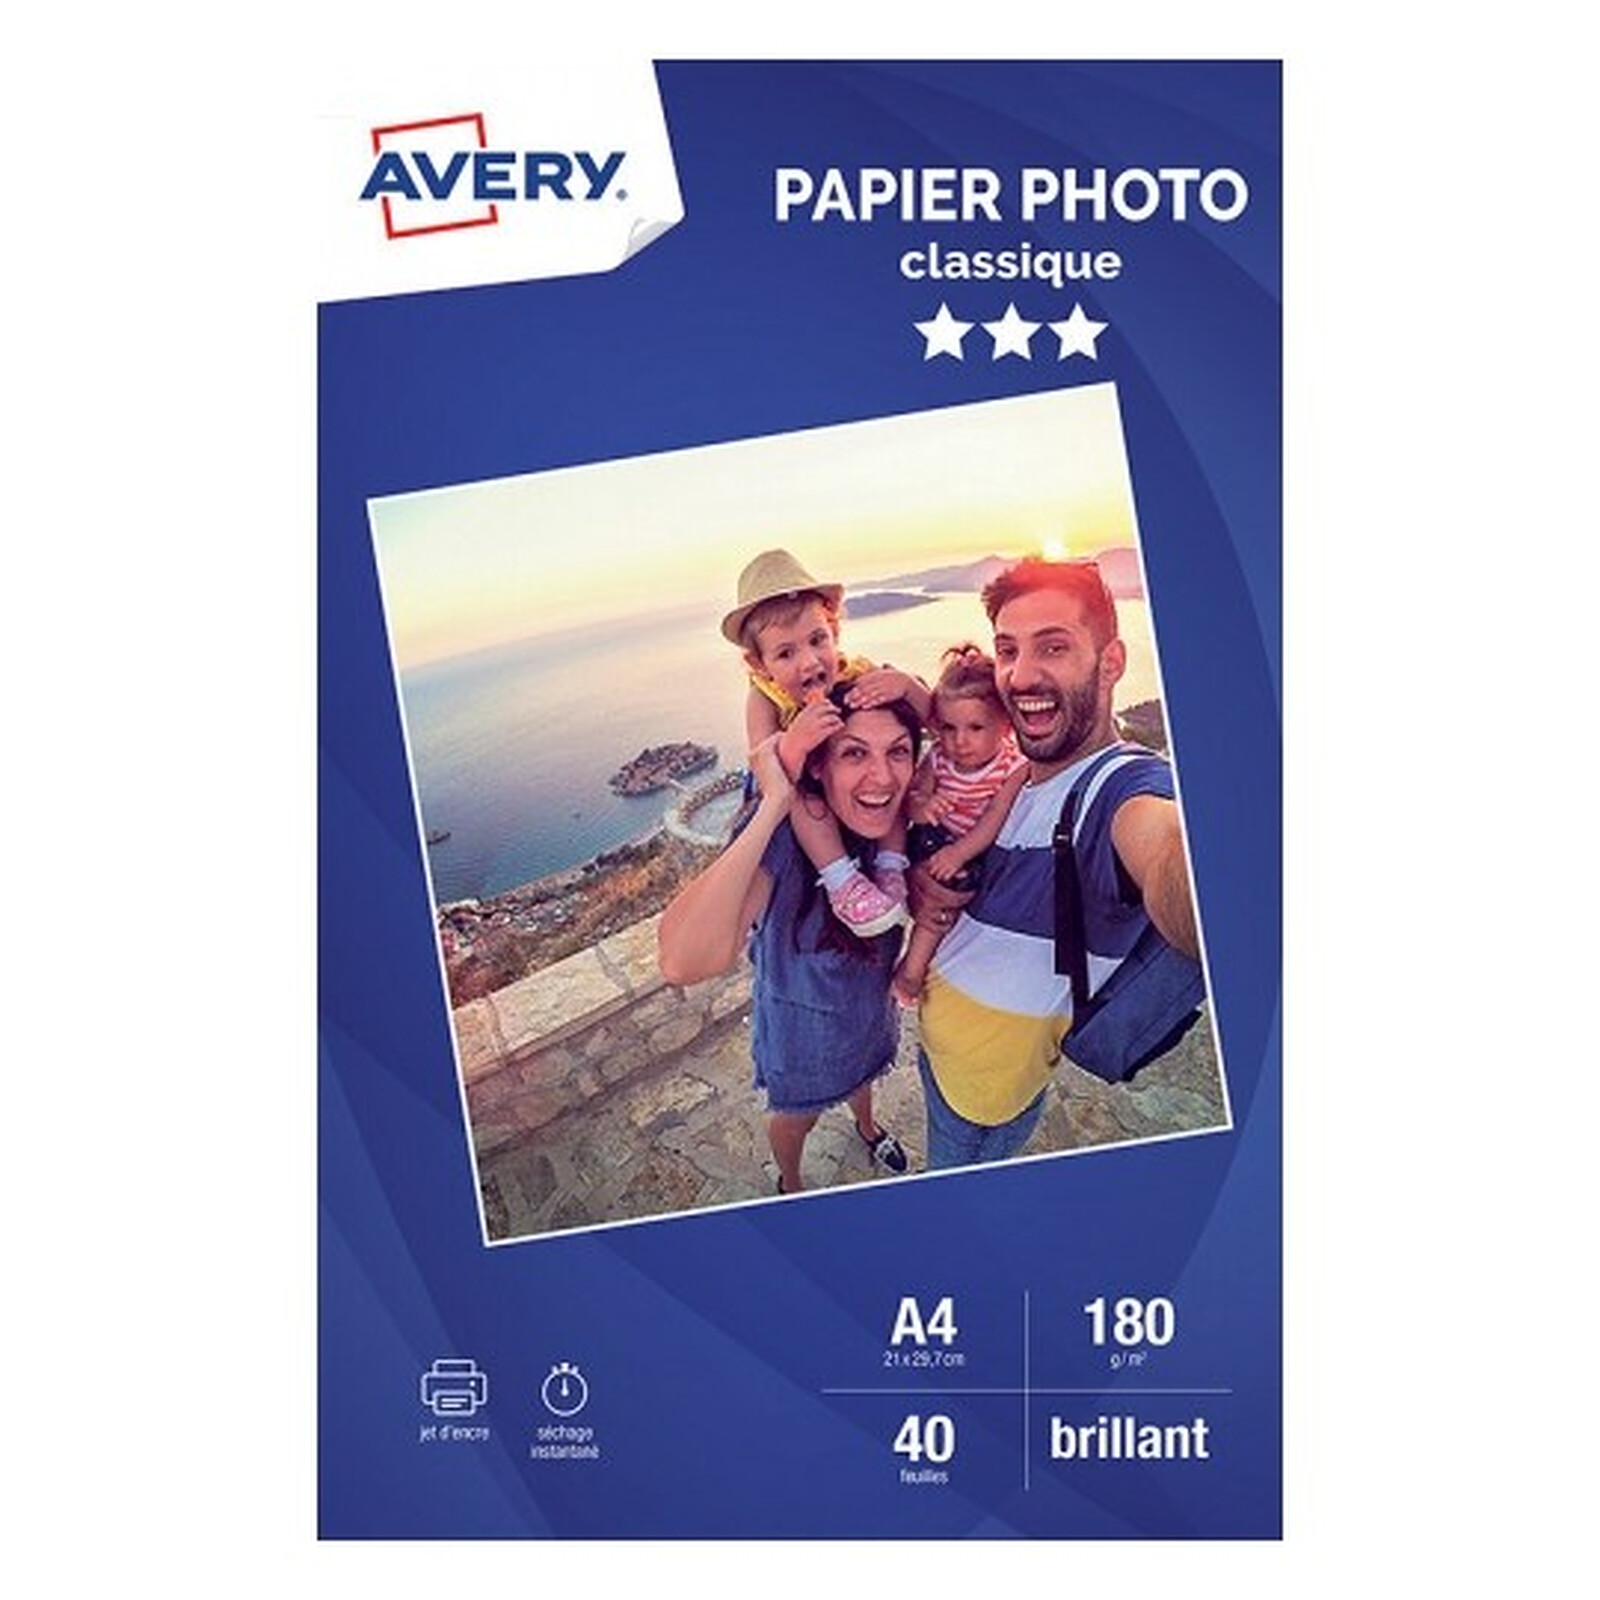 Avery Papier Photo Classique Jet d'encre A4, Blanc, Brillant, 180 g/m² (20  feuilles) - Papier imprimante - LDLC